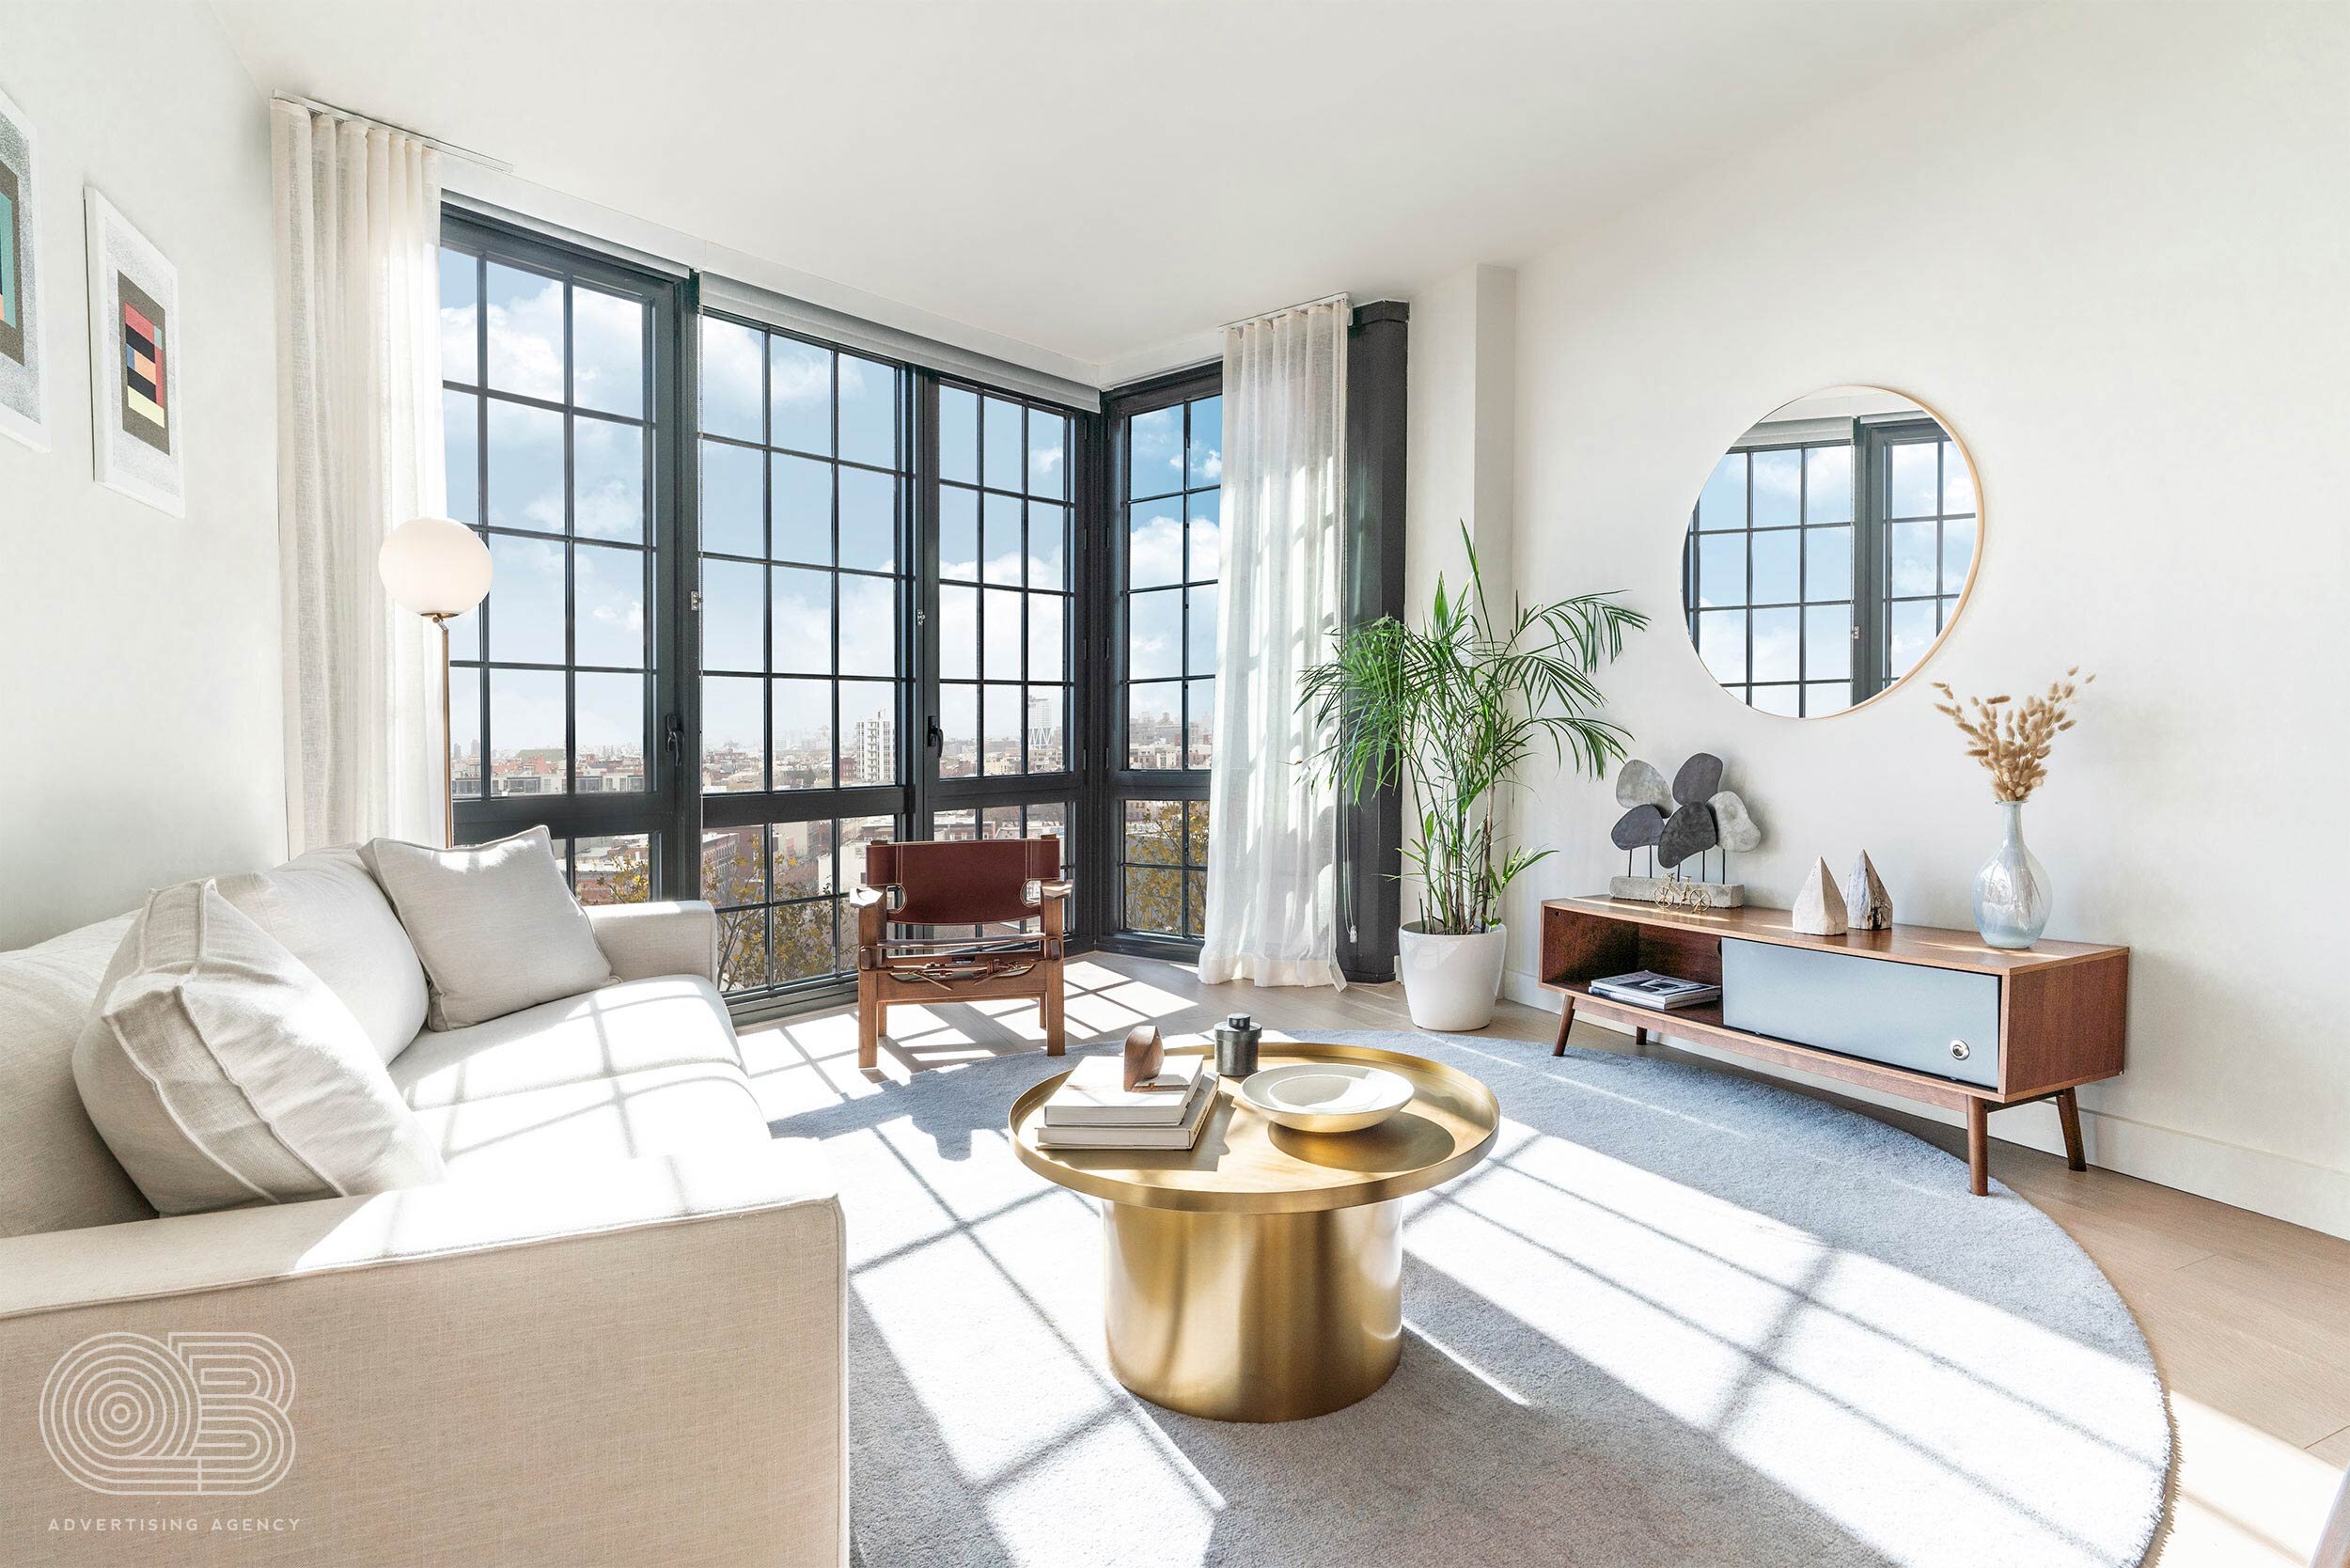 interior-sunlight-living-room-modern.jpg